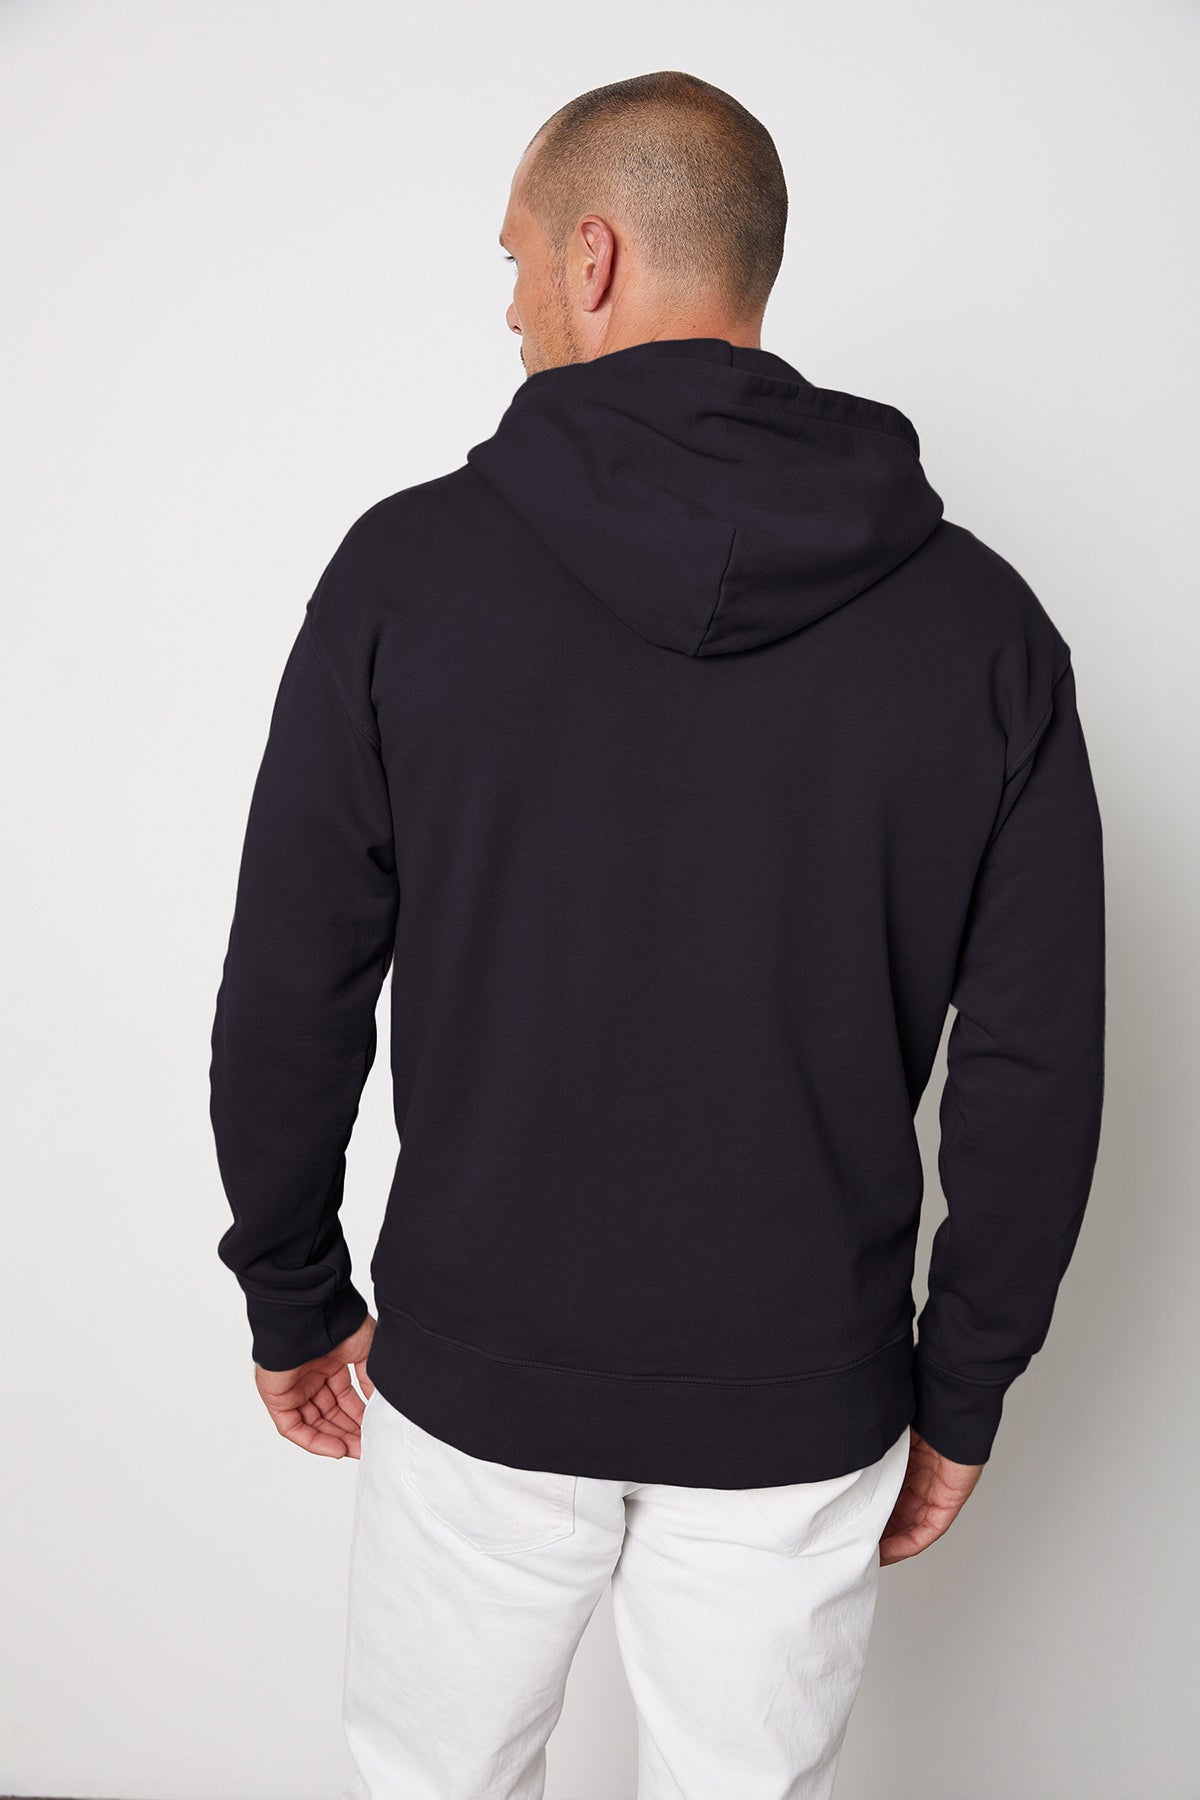 Issac hoodie vintage black back-24791670390977